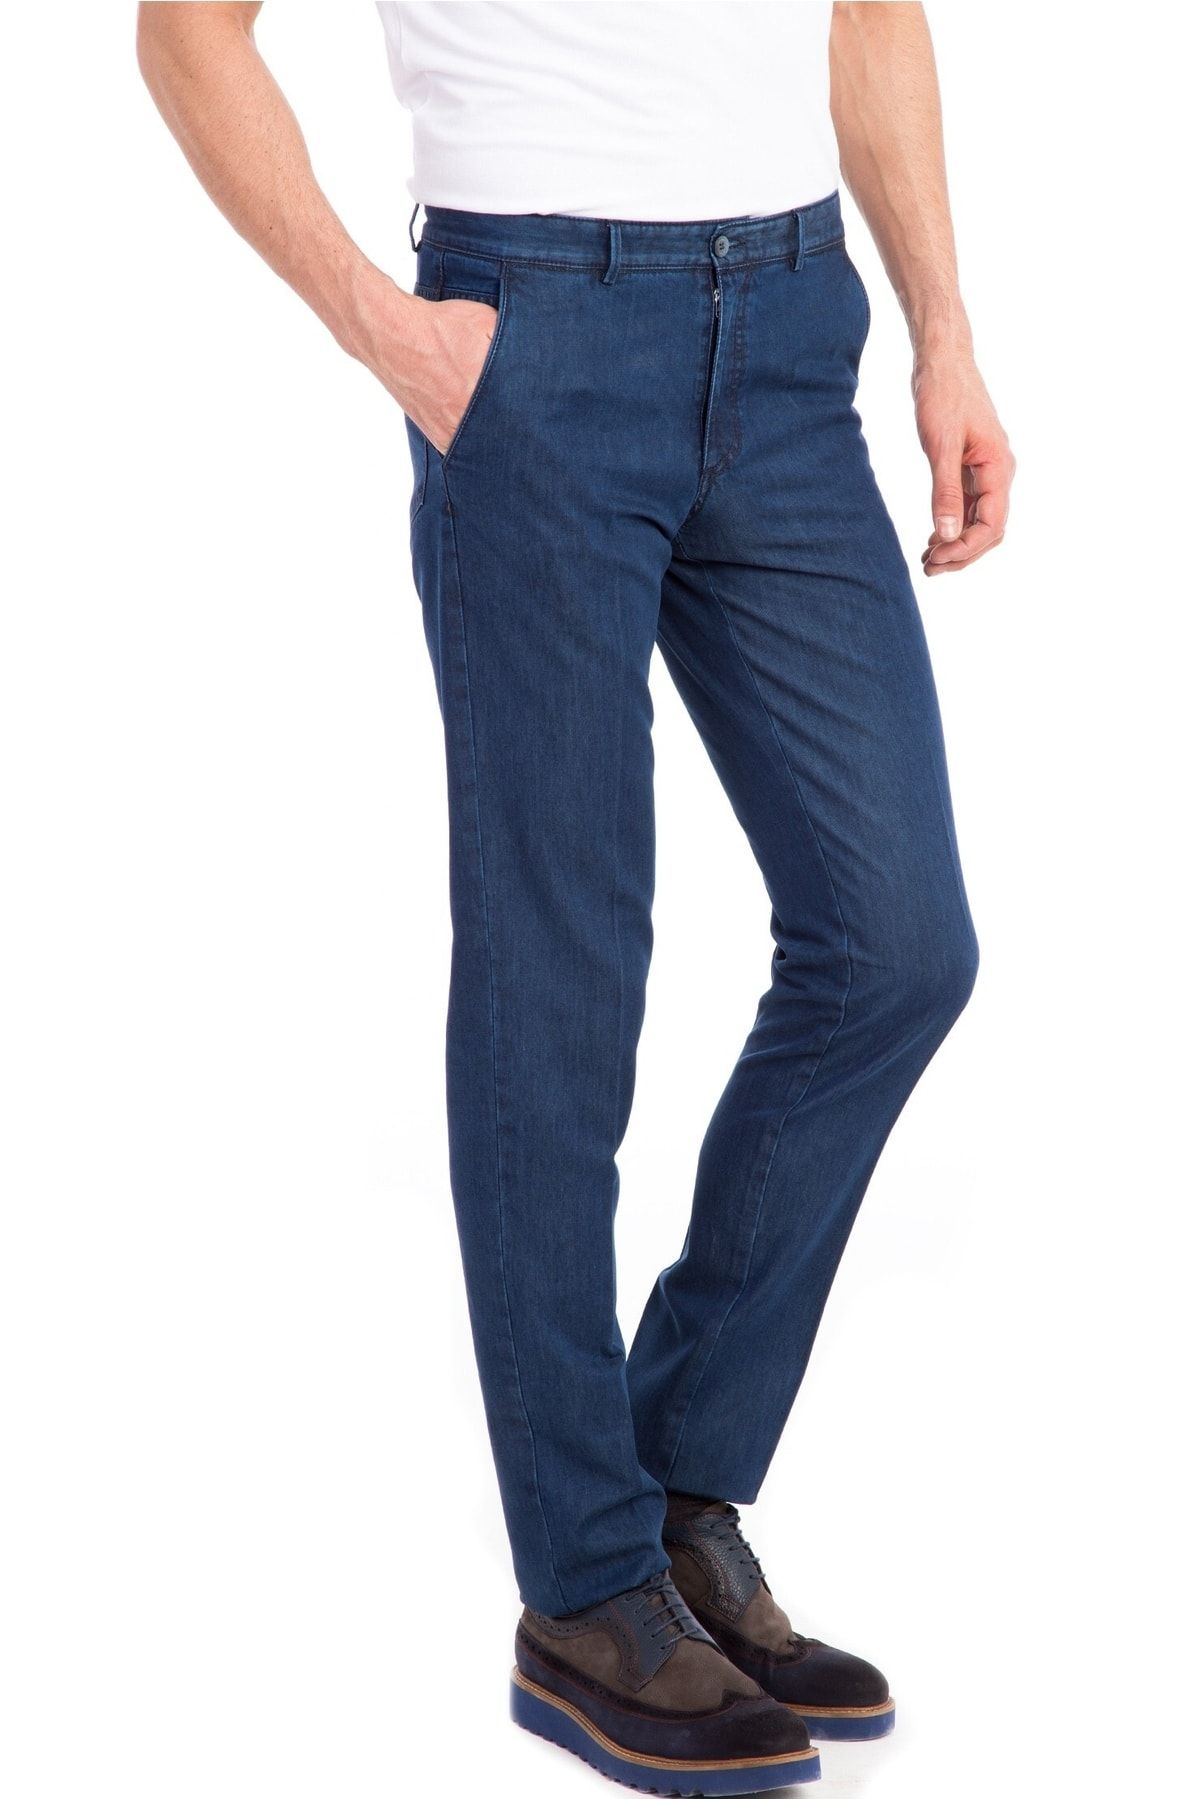 BELLİSİMO Big Jeans Koyu Mavi Klasik Fit Yandan Cepli Büyük Beden Yüksek Bel Boru Paça Erkek Kot Pantolon